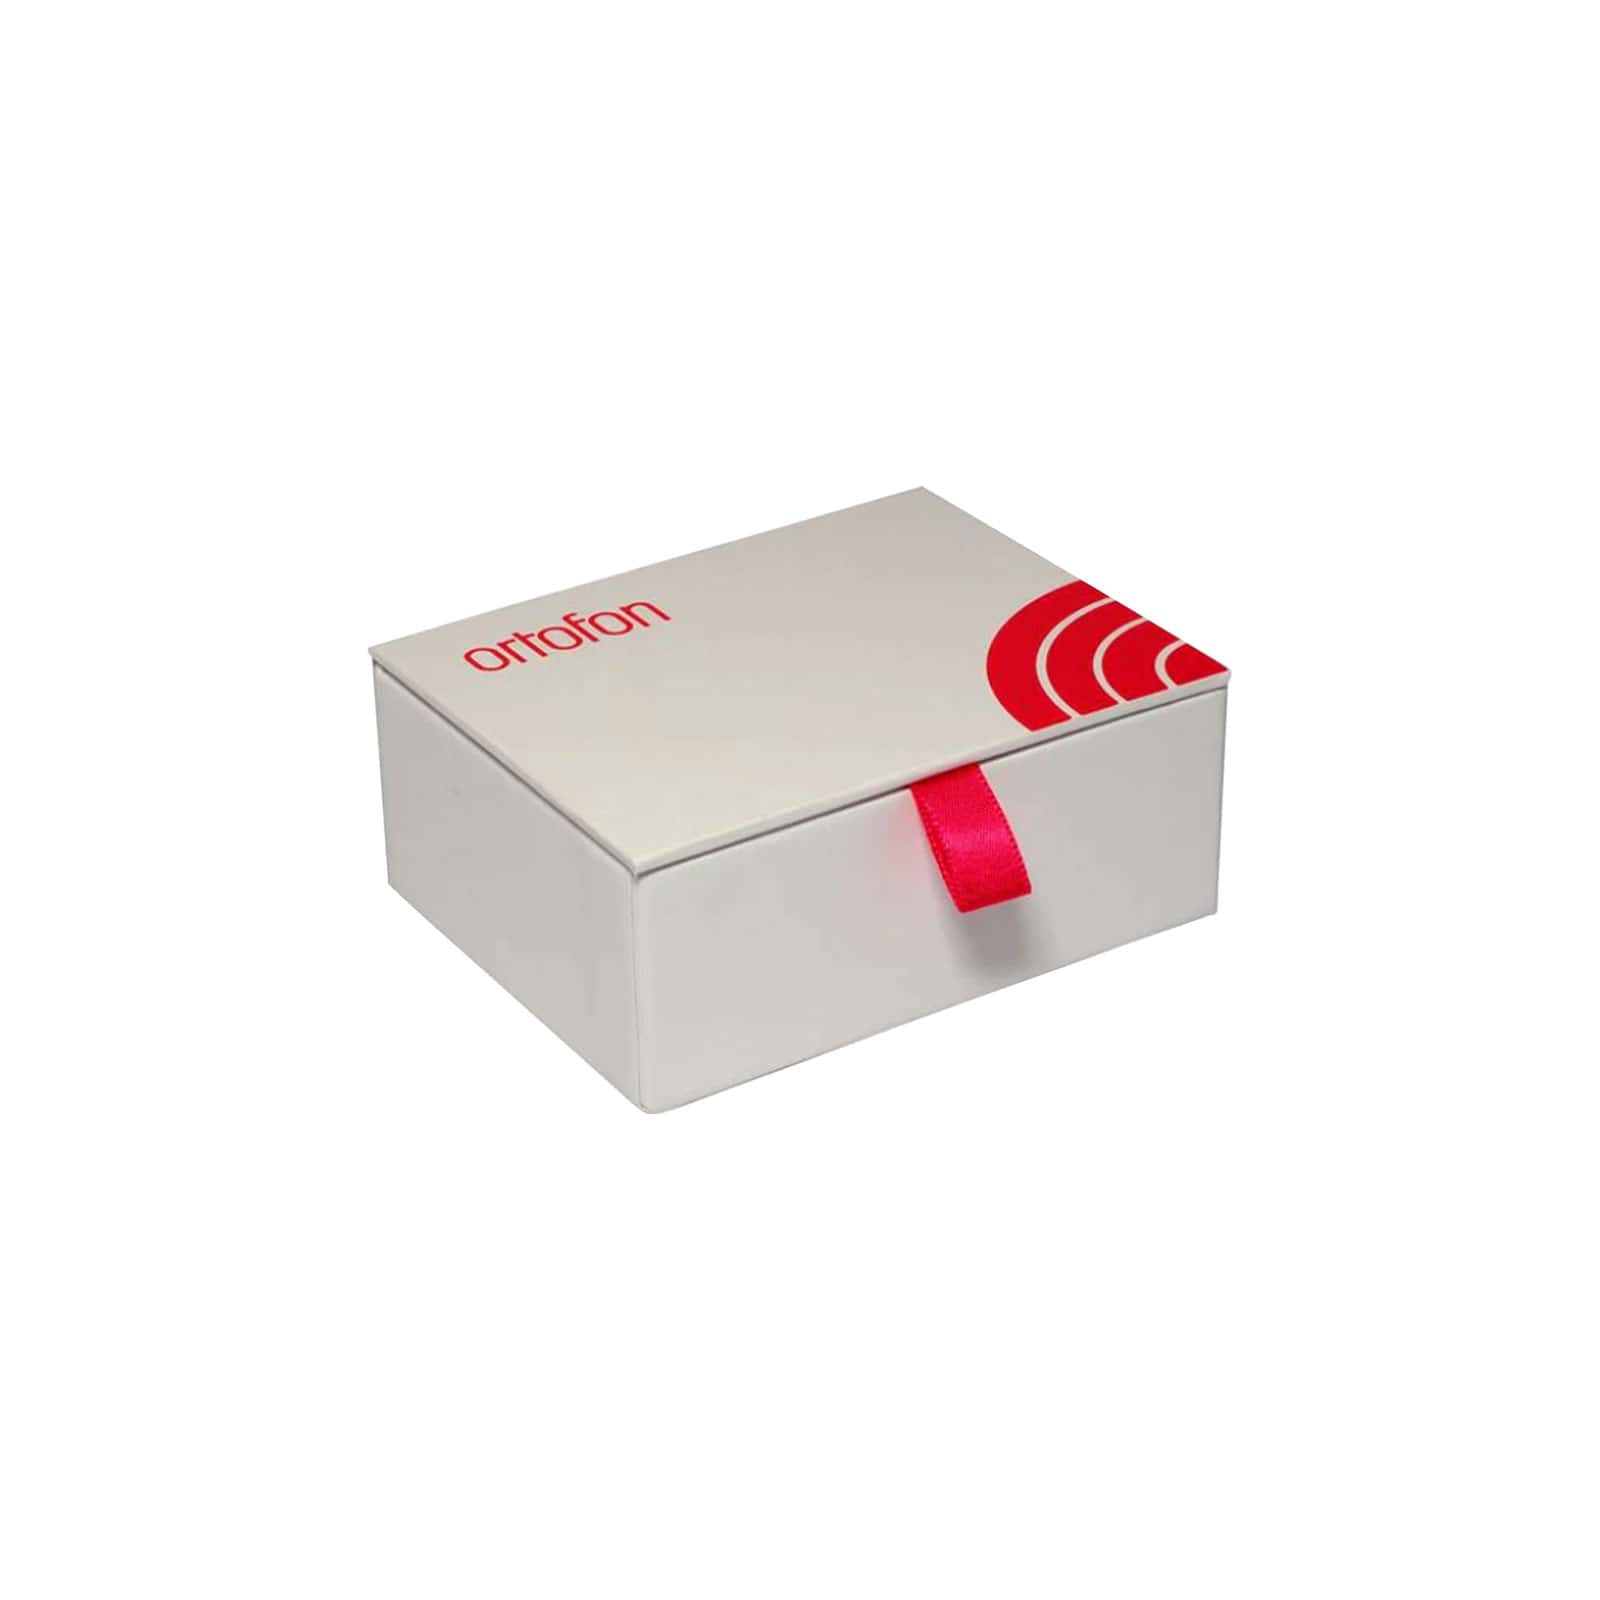 ORTOFON HIFI SPU WHITE BOX FOR SPU G